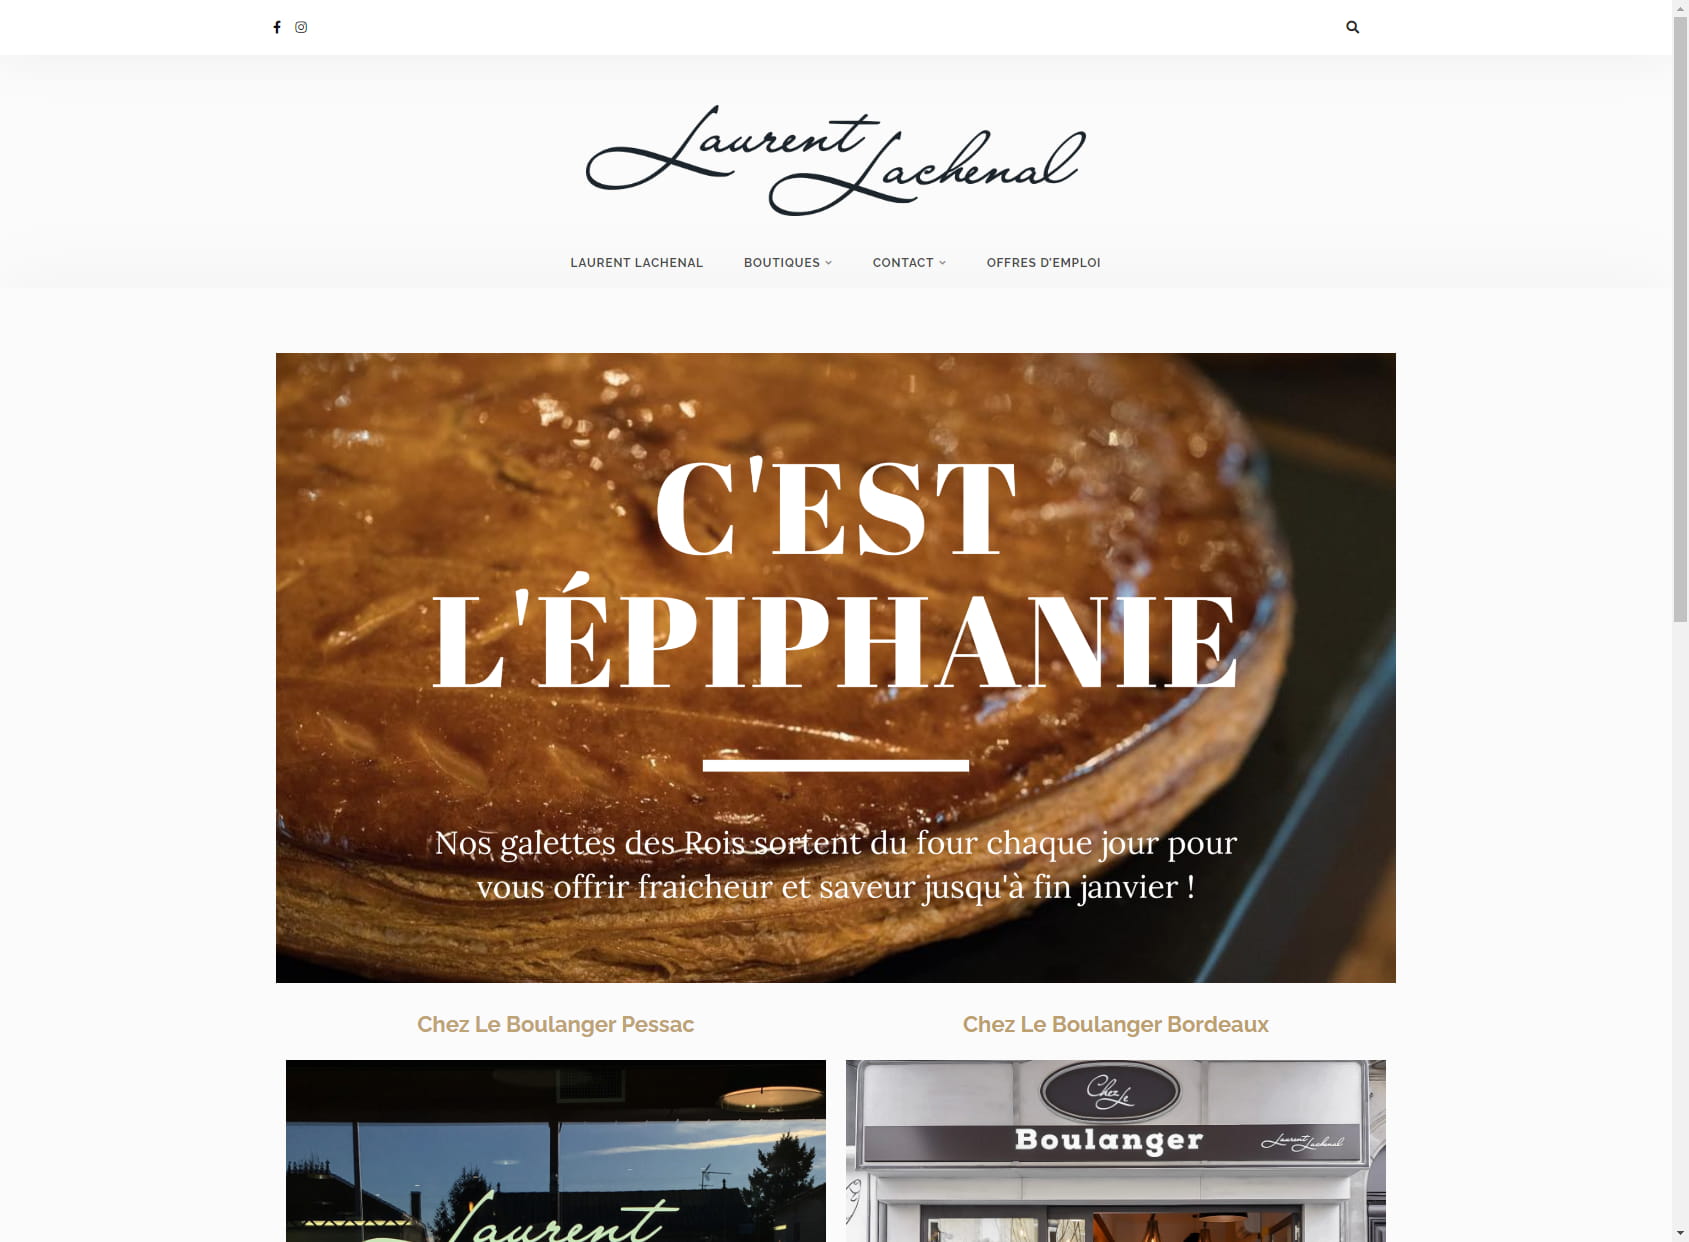 Chez Le Boulanger - Laurent Lachenal